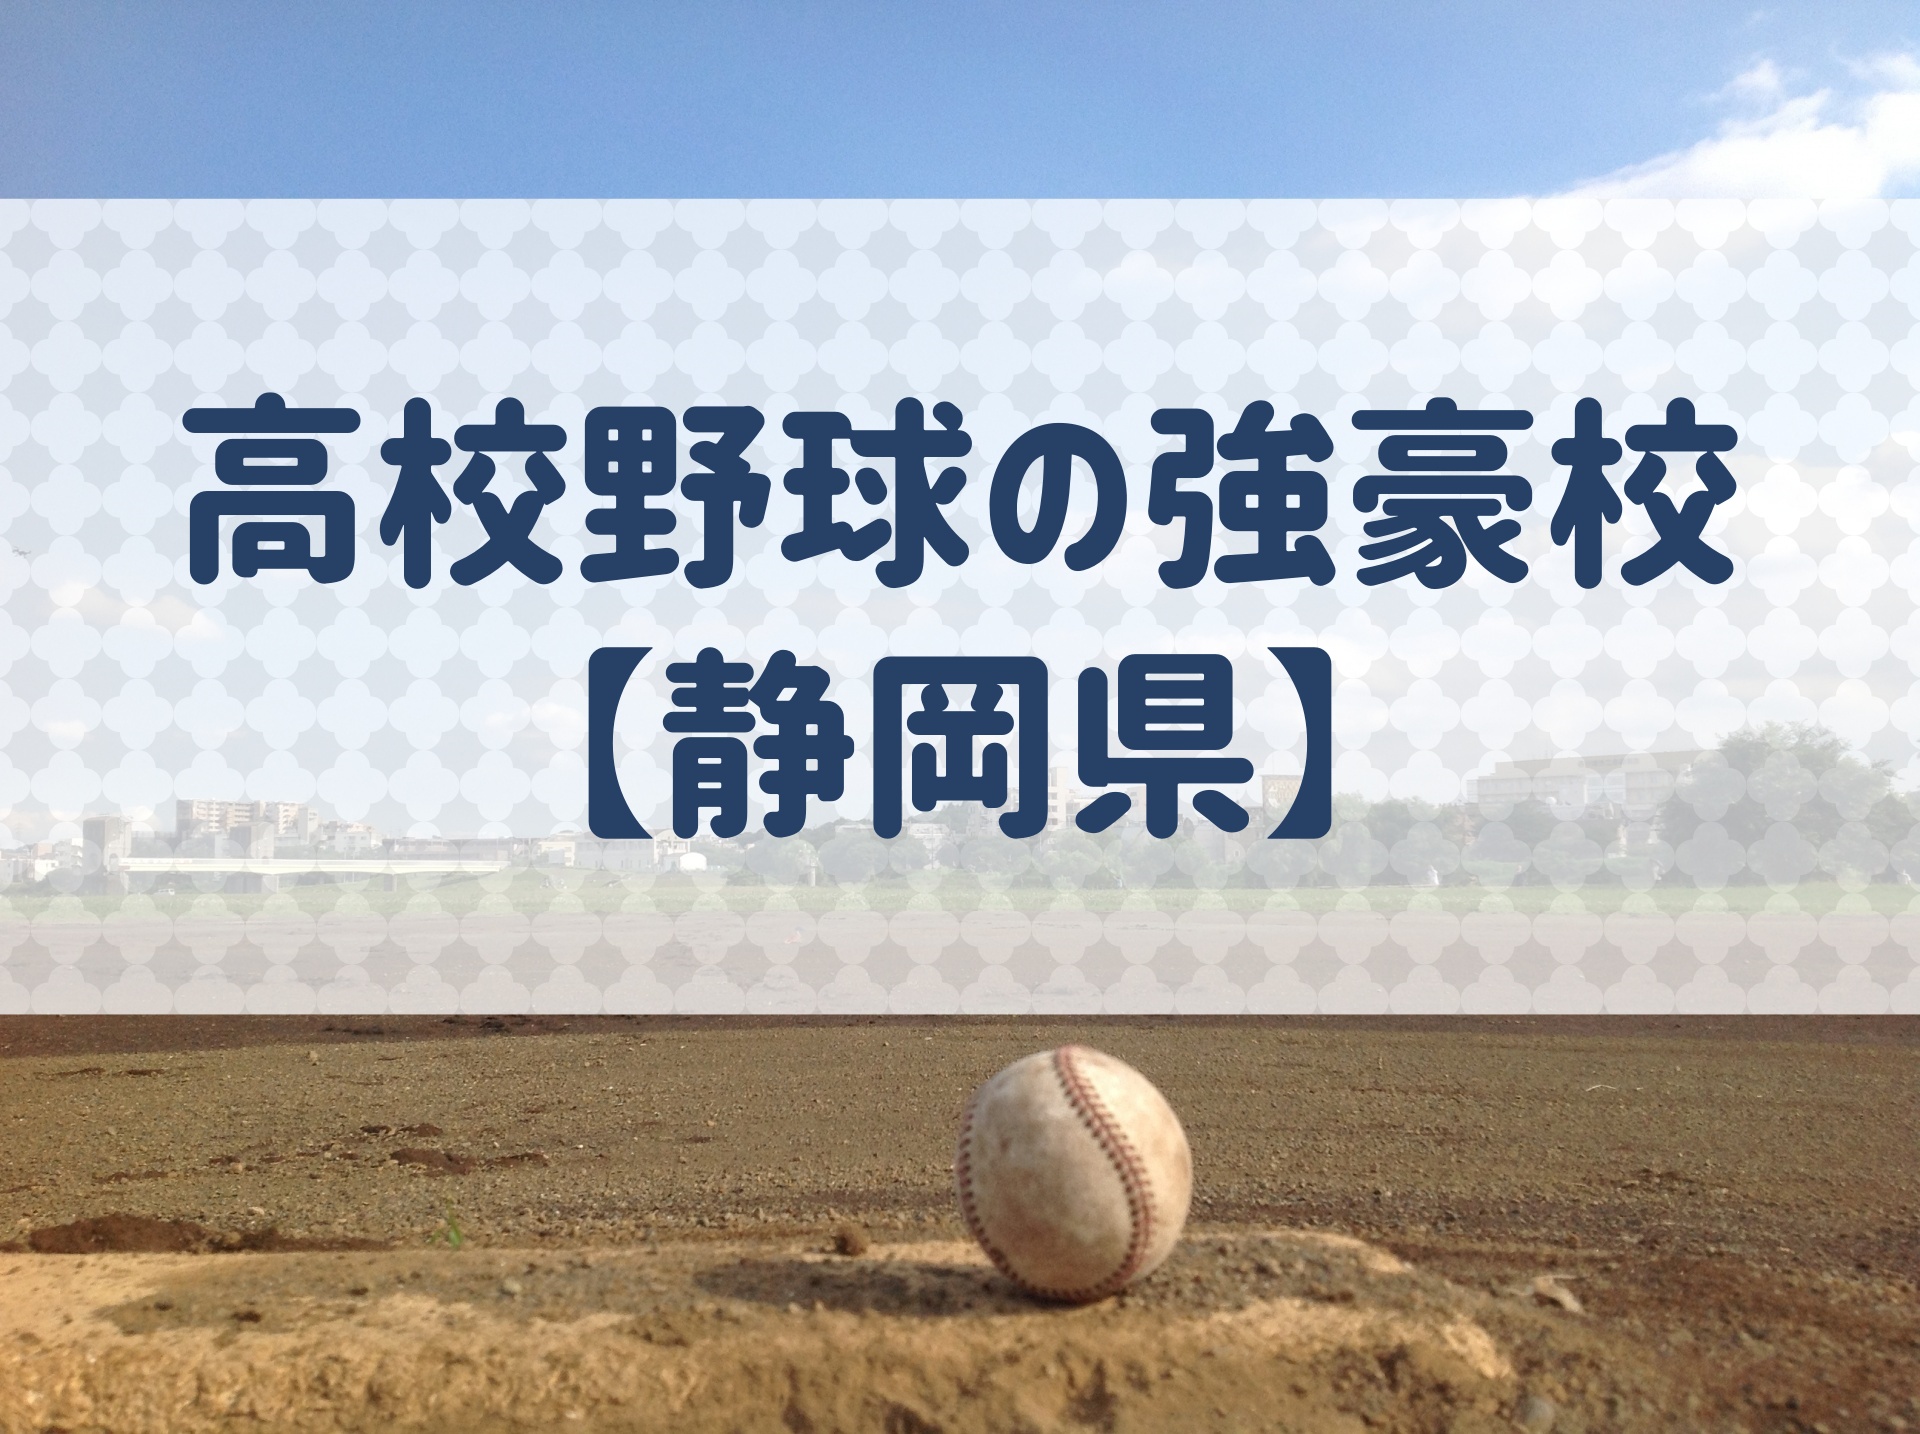 静岡県 高校野球の強豪校 特徴と実績などを紹介 野球用語 Net